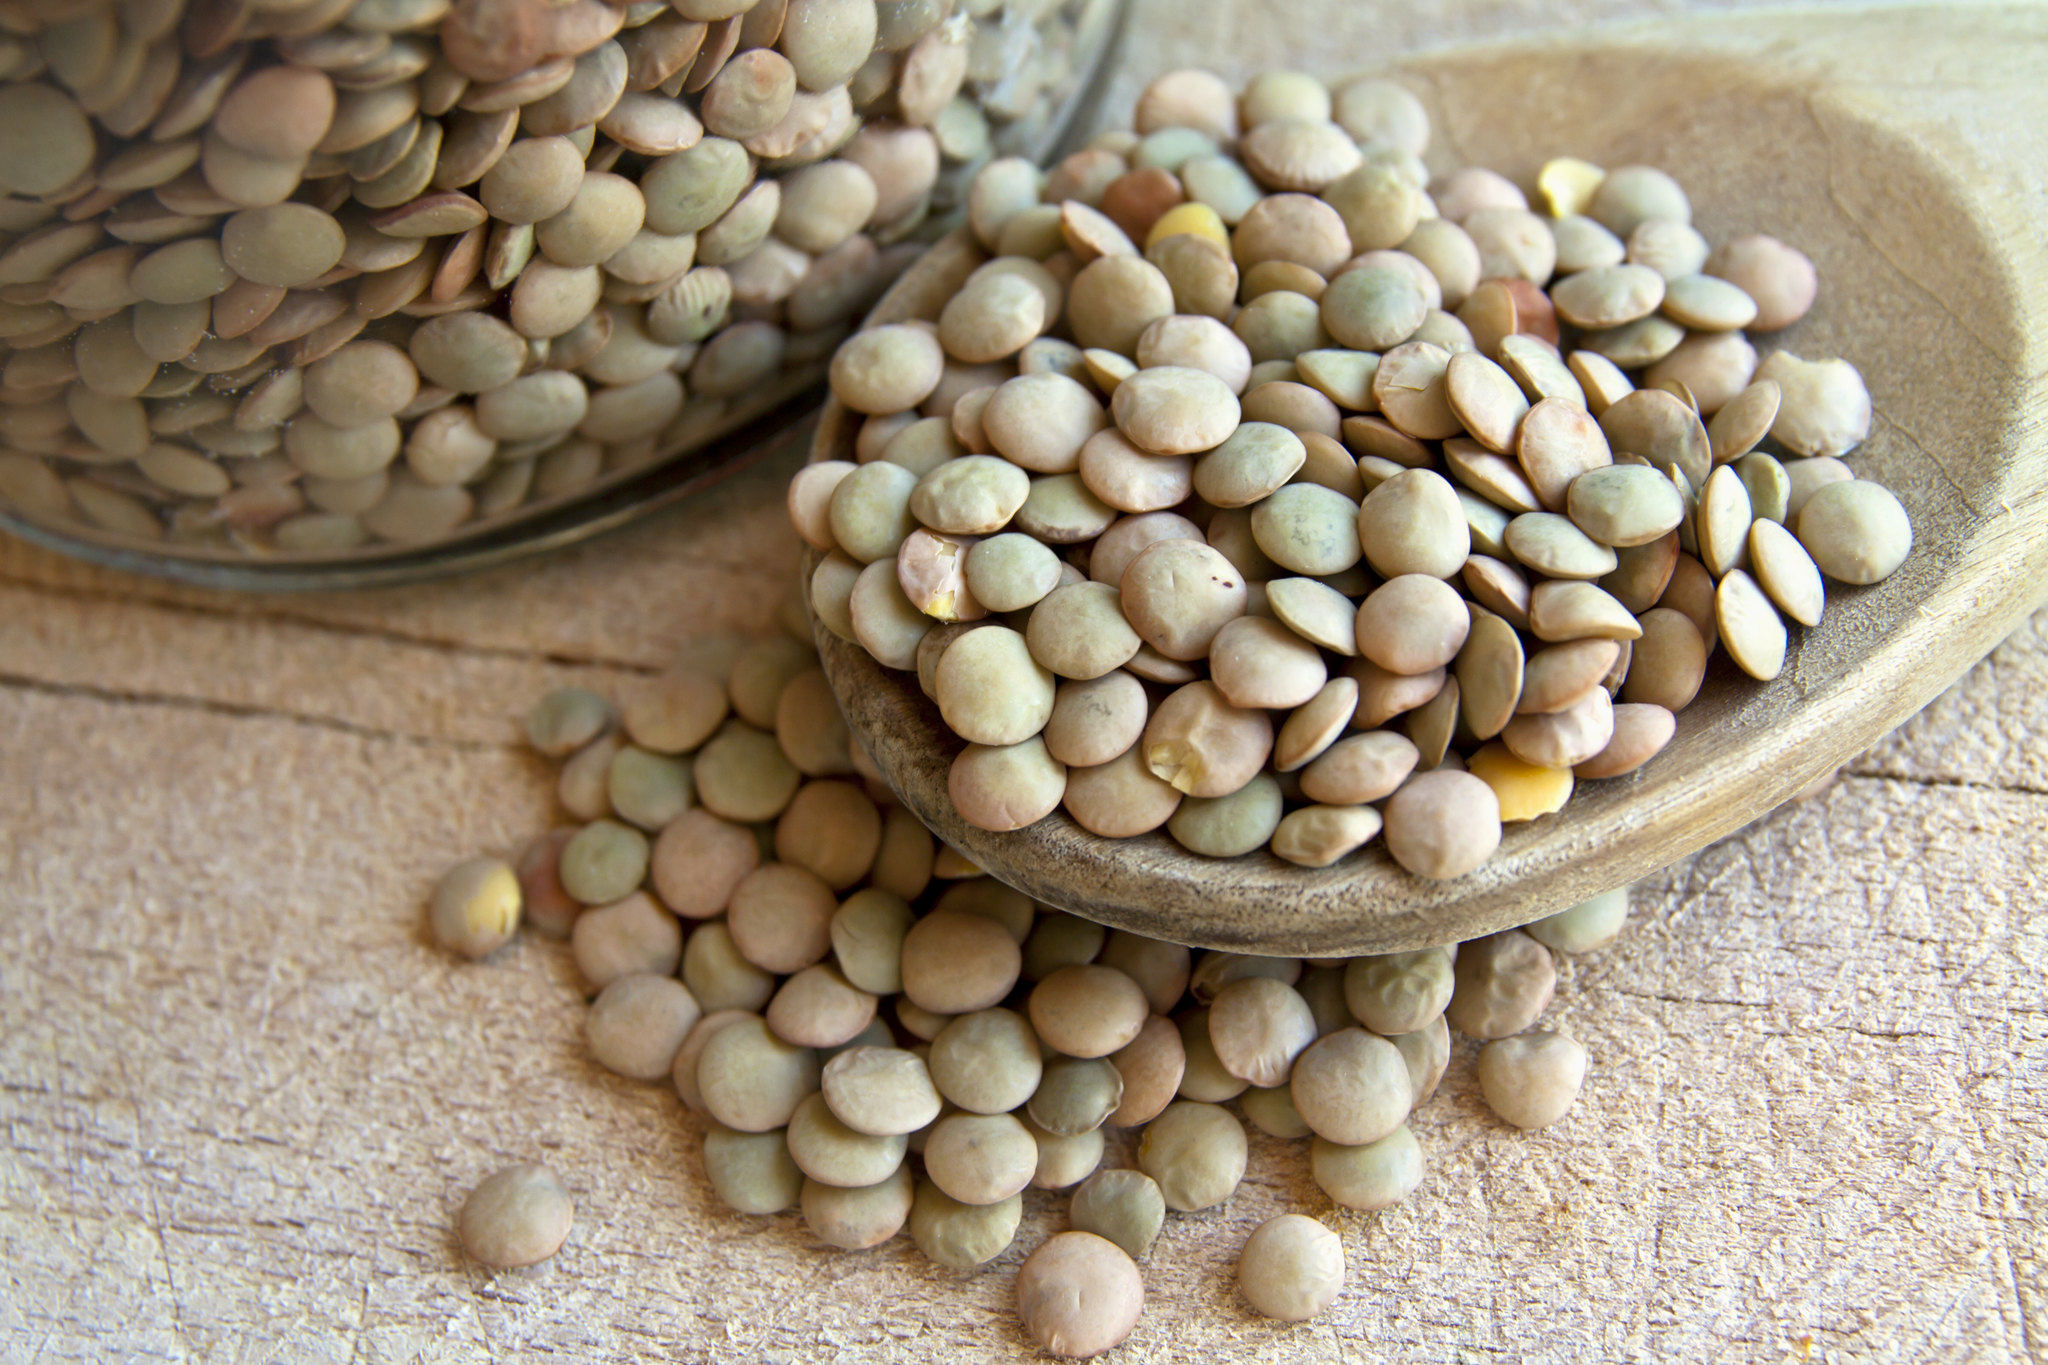 Dried lentils